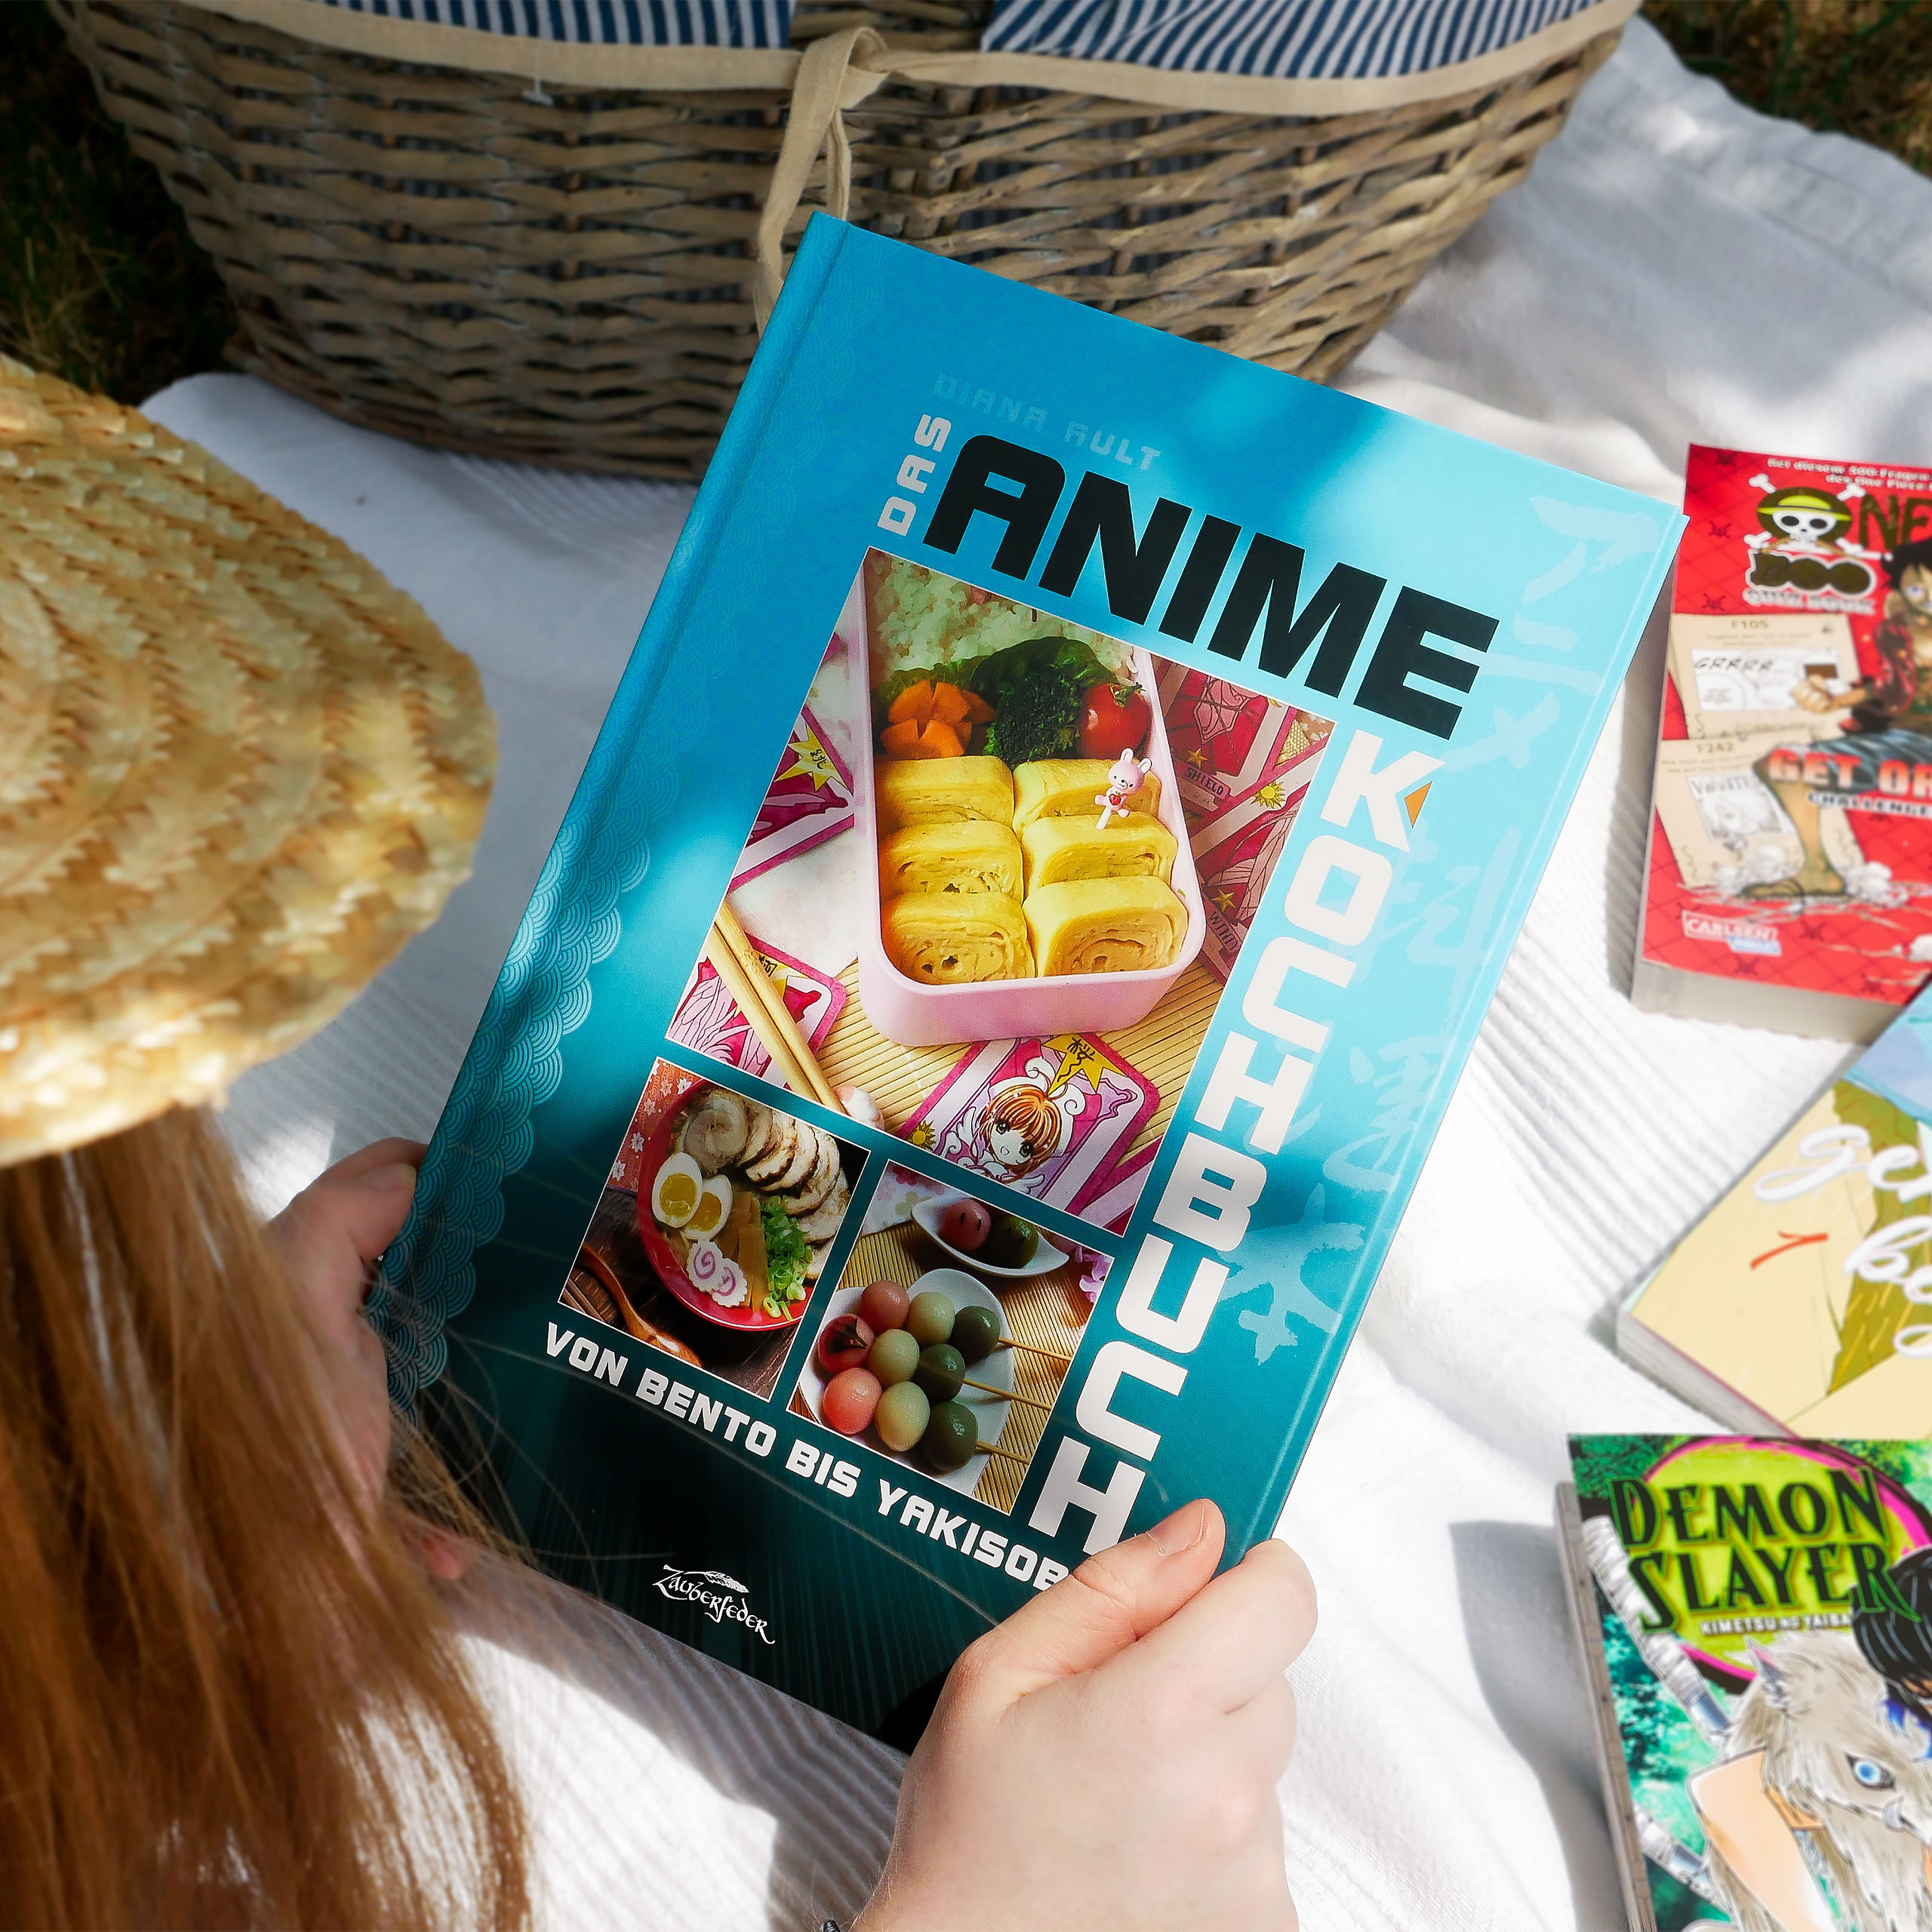 Das Anime Kochbuch